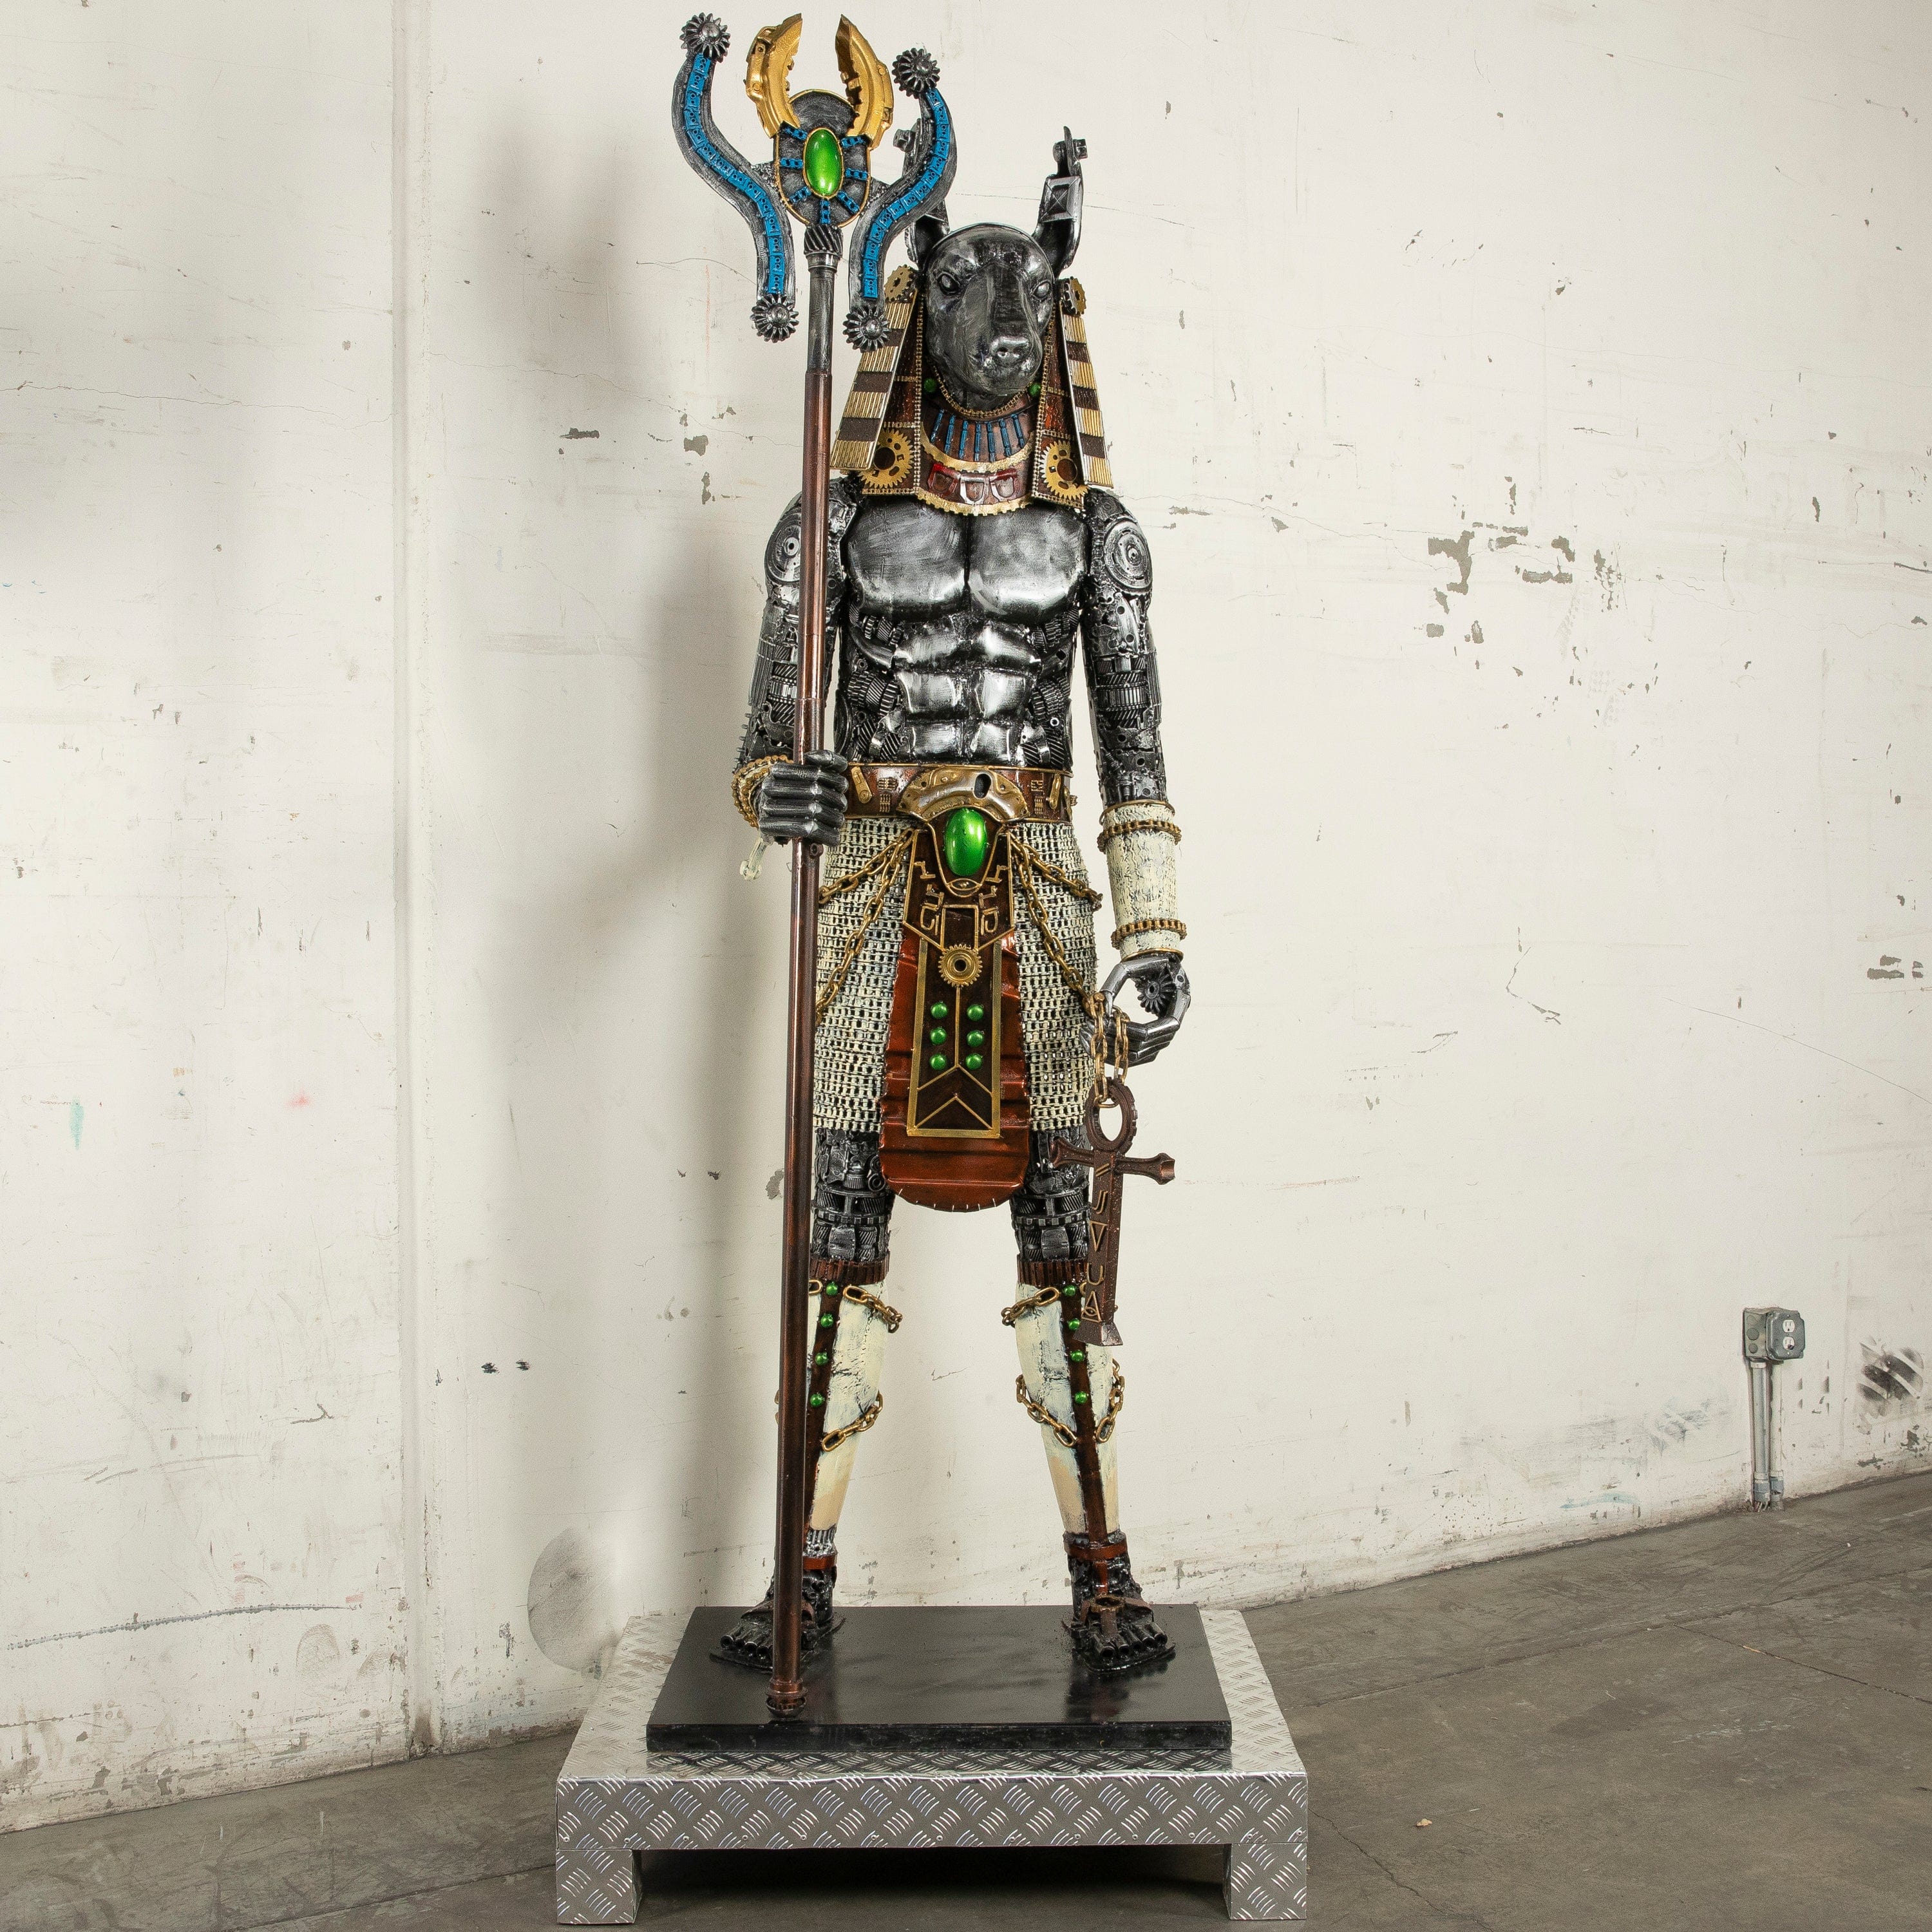 Kalifano Recycled Metal Art 91" Anubis Recycled Metal Sculpture Anubis RMS-ANU230-N01